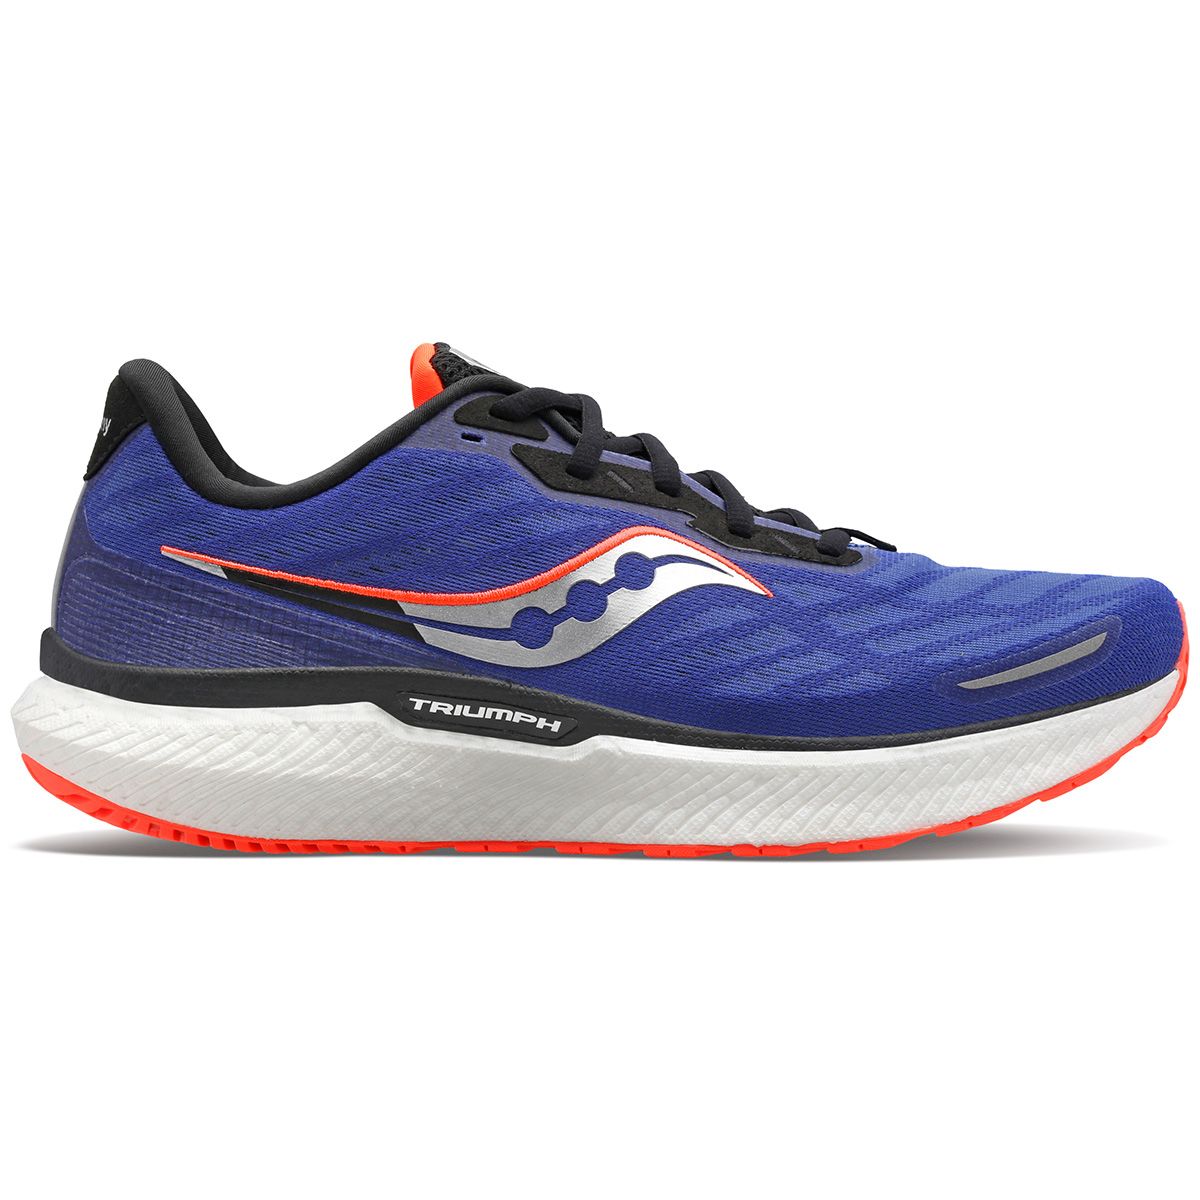 Saucony Triumph 19 Men's Running Shoes S20678-16